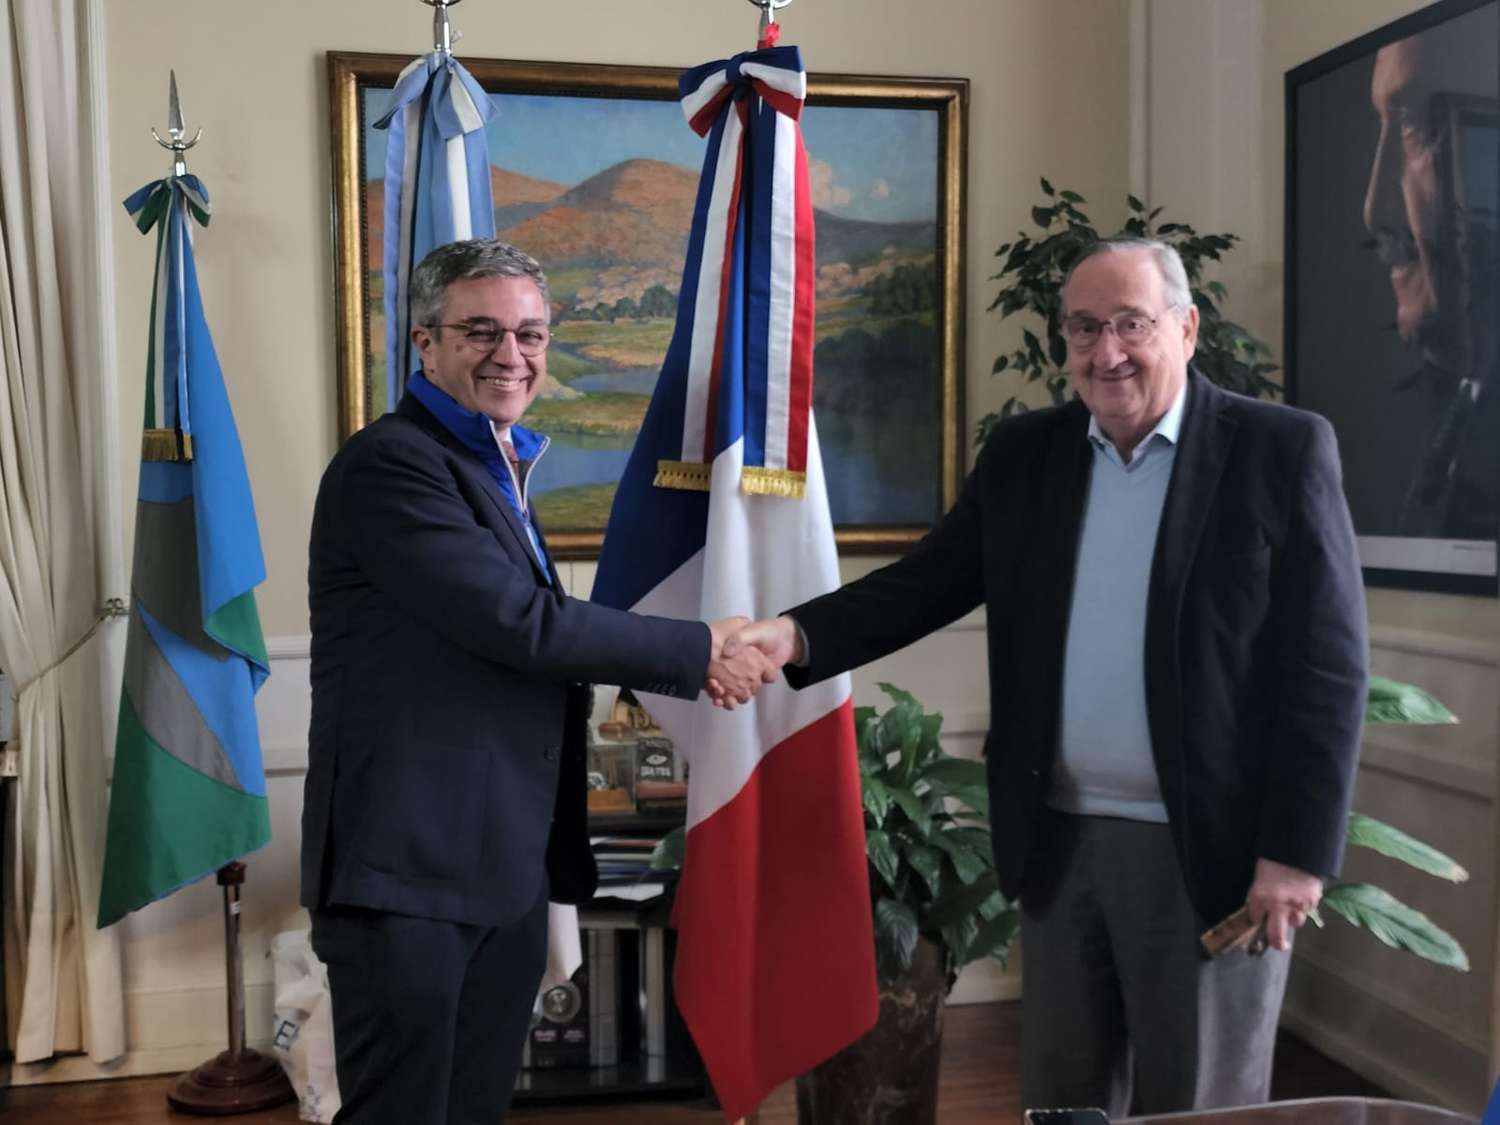 El Intendente mantuvo un encuentro de trabajo con un alcalde francés